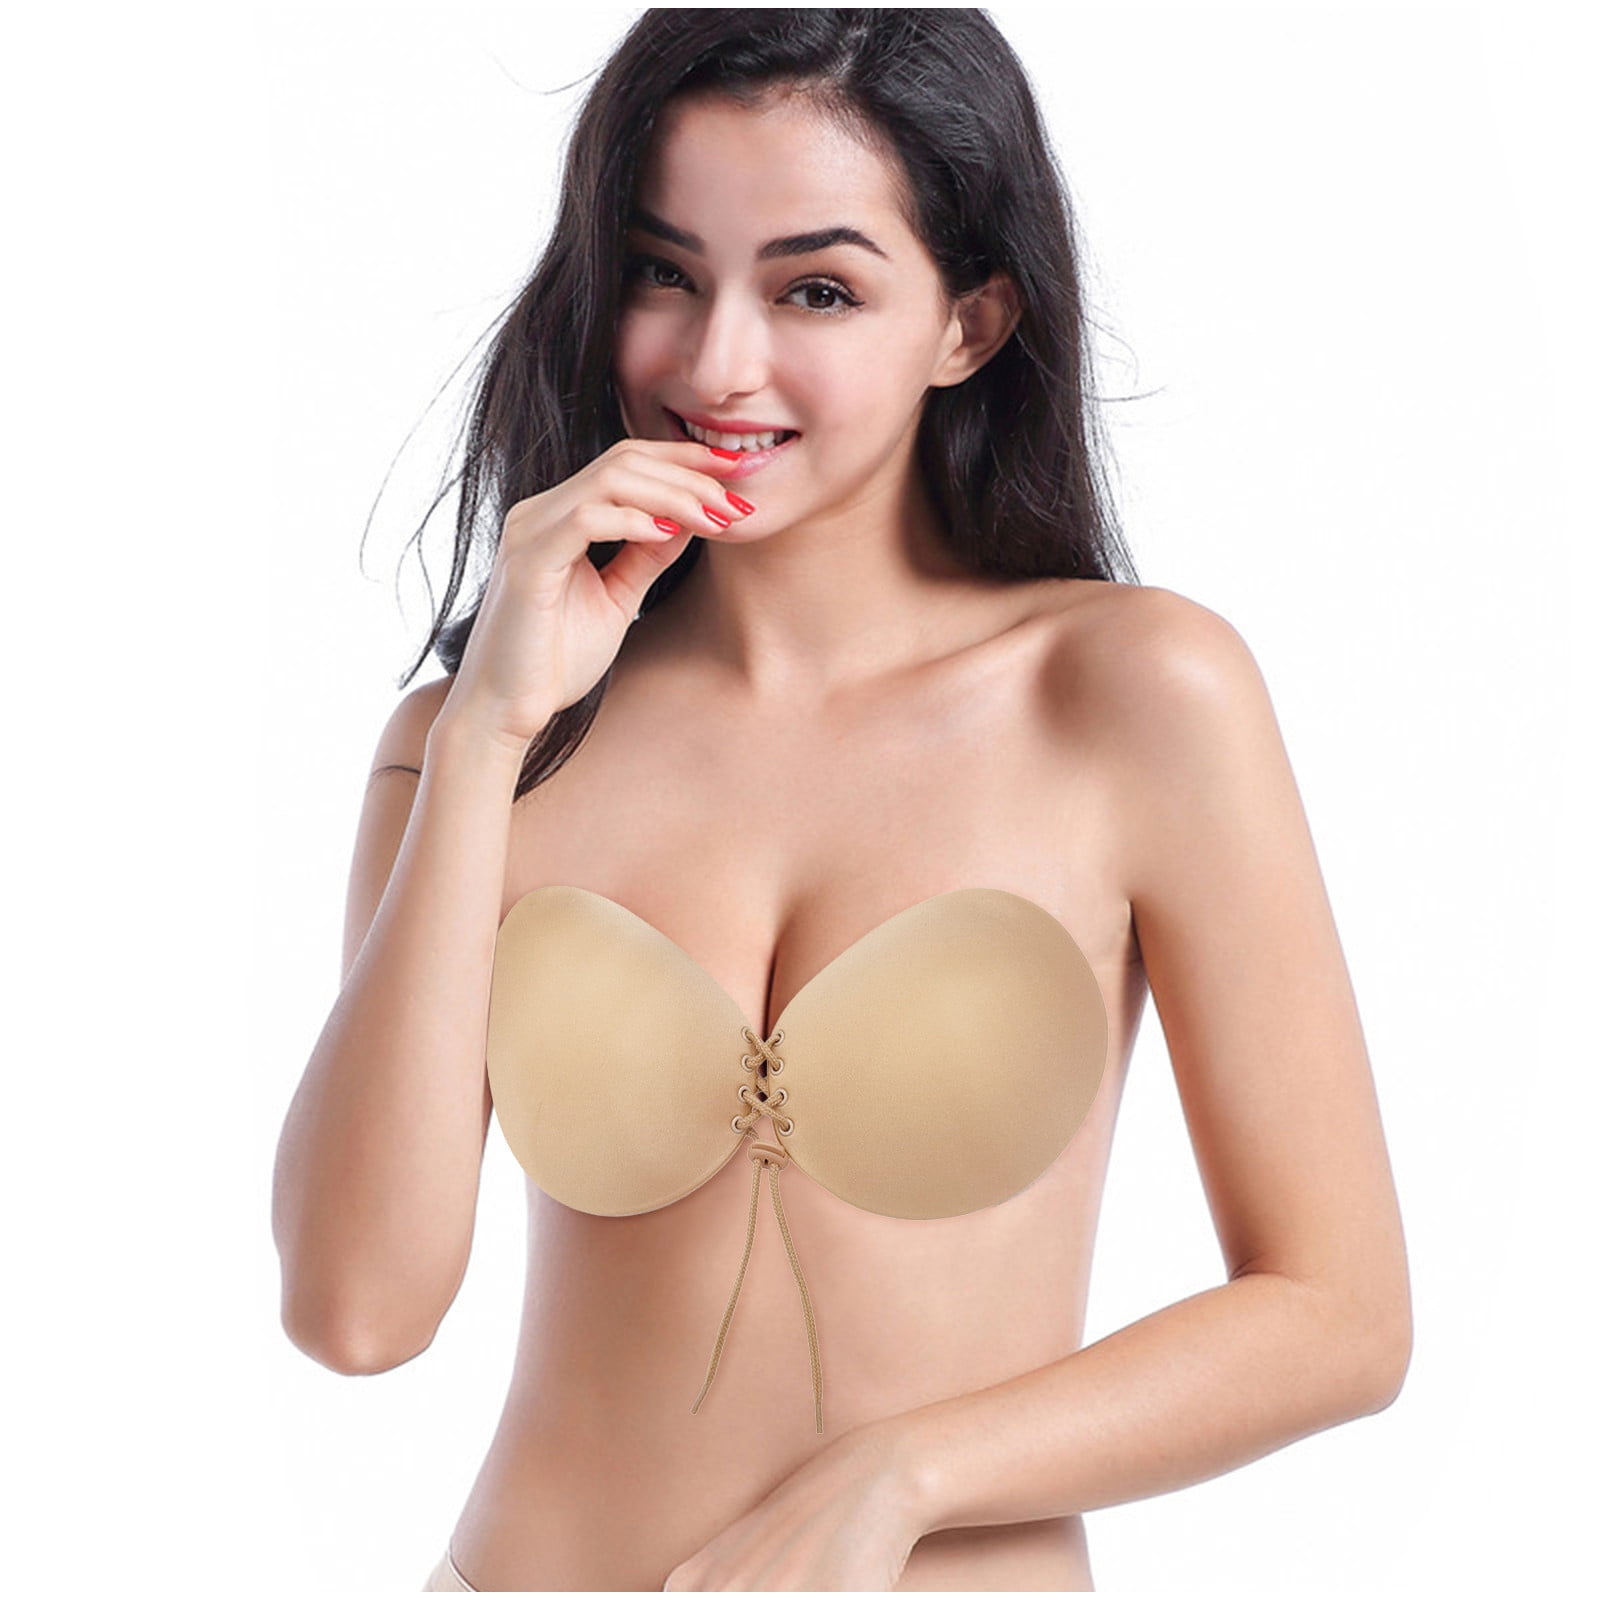 2 Silicone Drawstring Adjustable Breast Lift Bra Size E